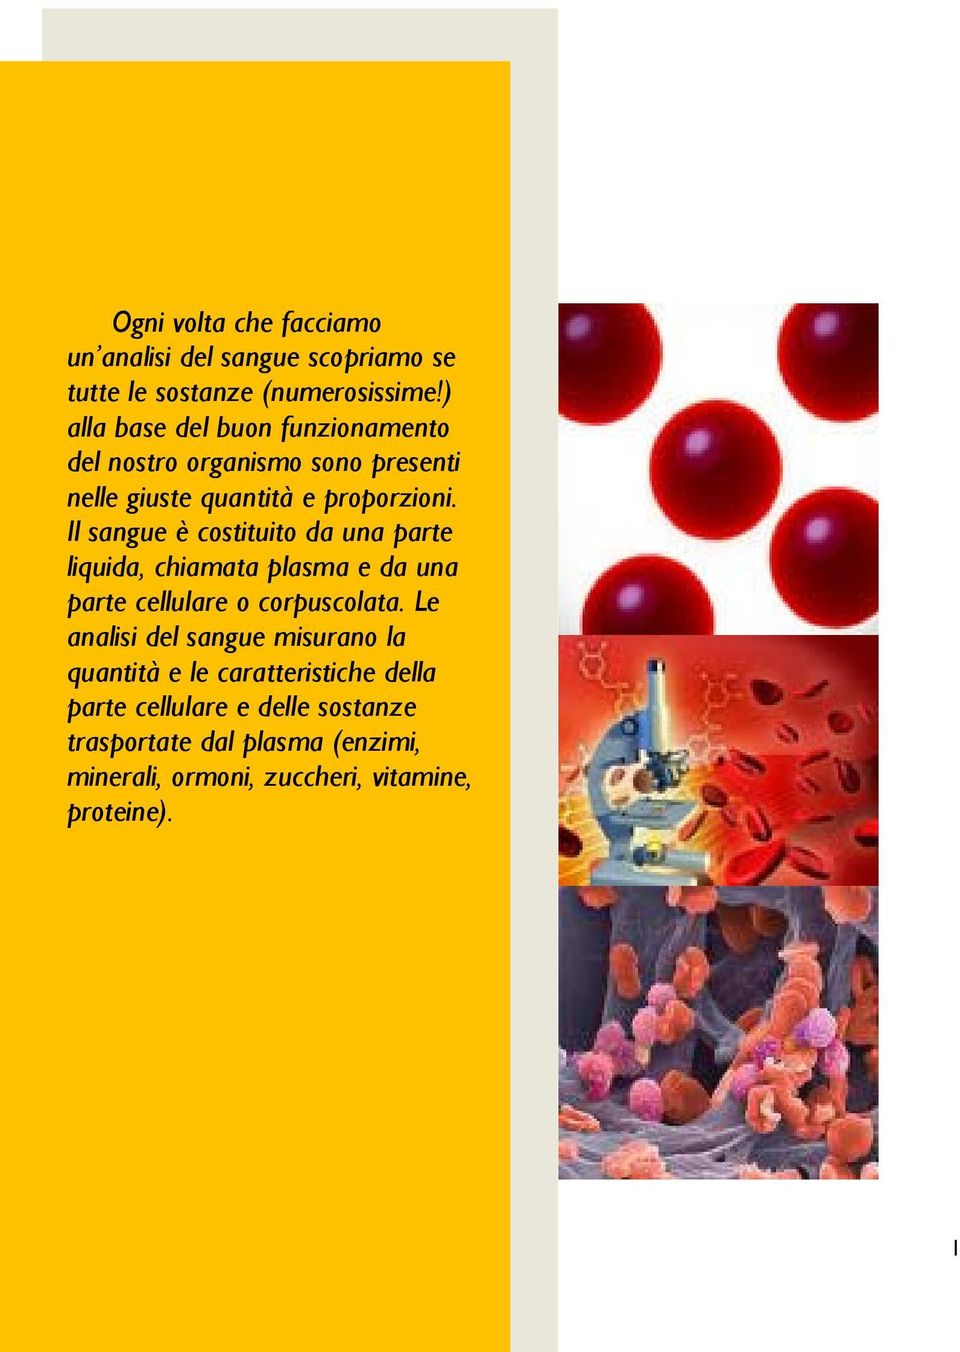 Il sangue è costituito da una parte liquida, chiamata plasma e da una parte cellulare o corpuscolata.